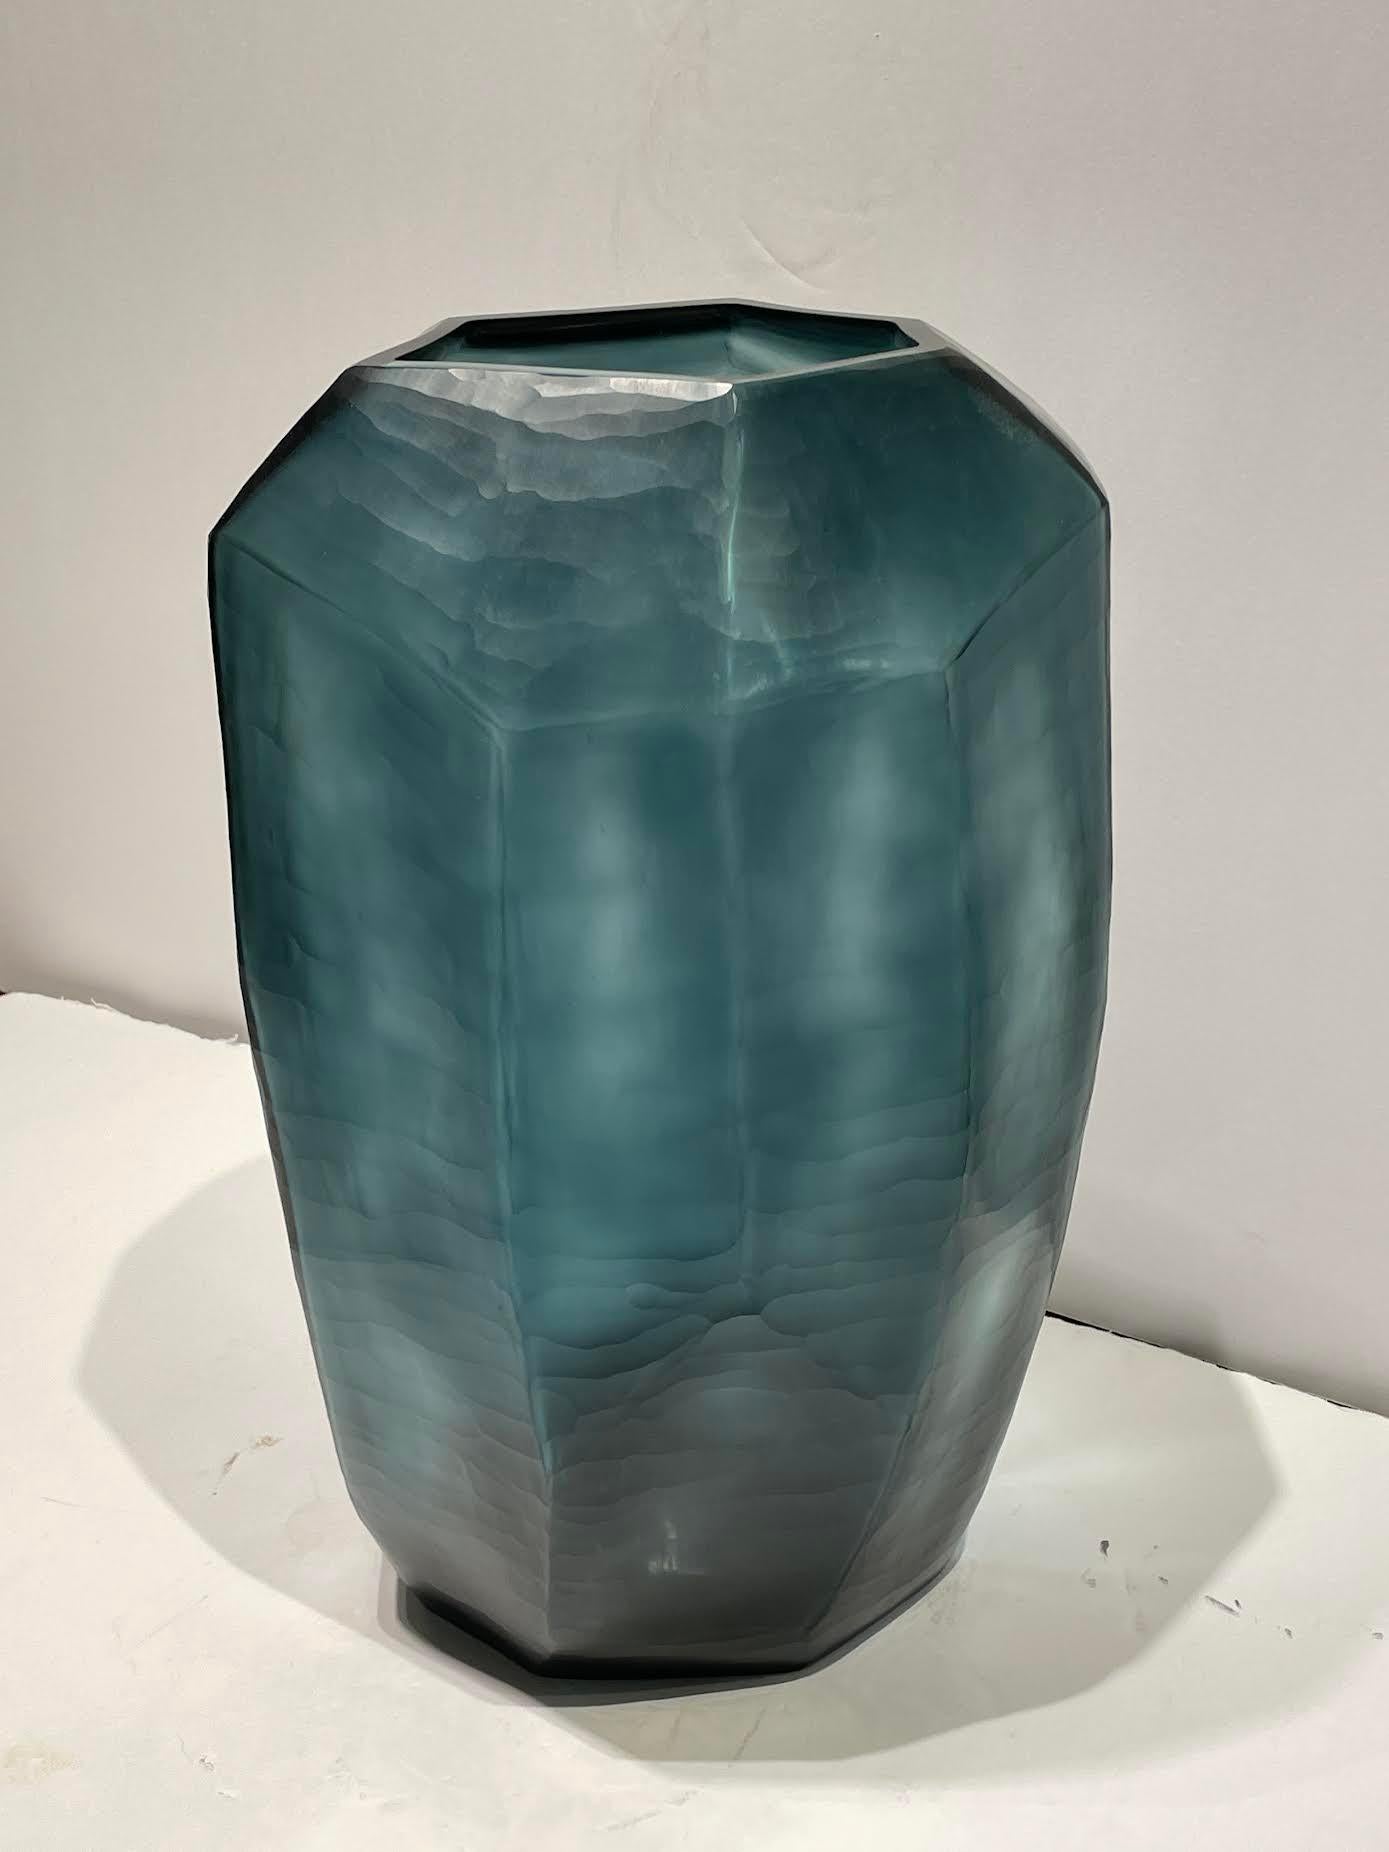 Grand vase roumain contemporain d'un bleu profond avec des détails de design cubiste.
 Également disponible en vase plus court (S5575) et en bol (S5576)
Peut contenir de l'eau.

 